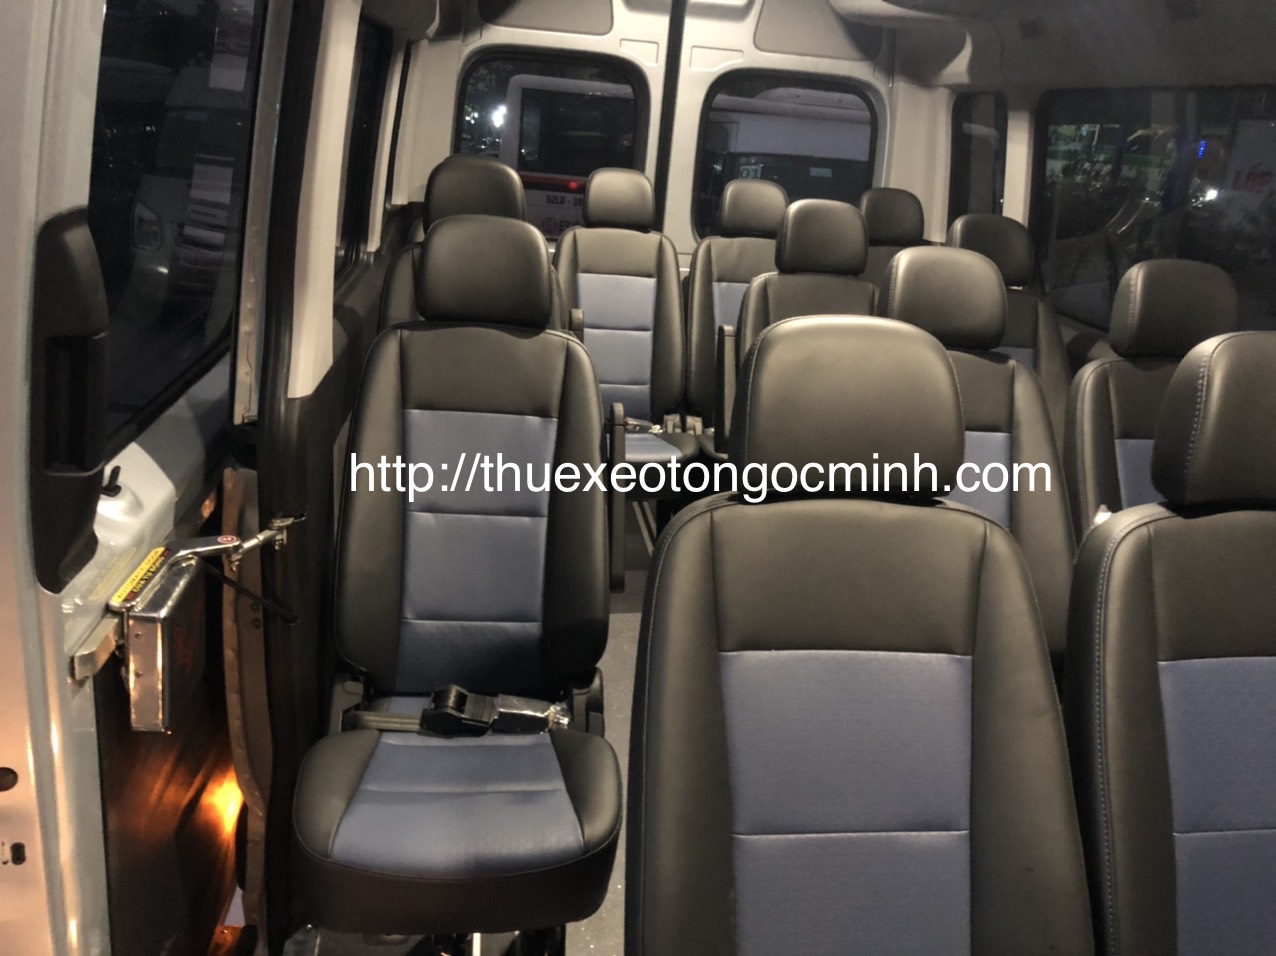 Thuê xe 16 chỗ Hyundai Solati tại Hà Nội